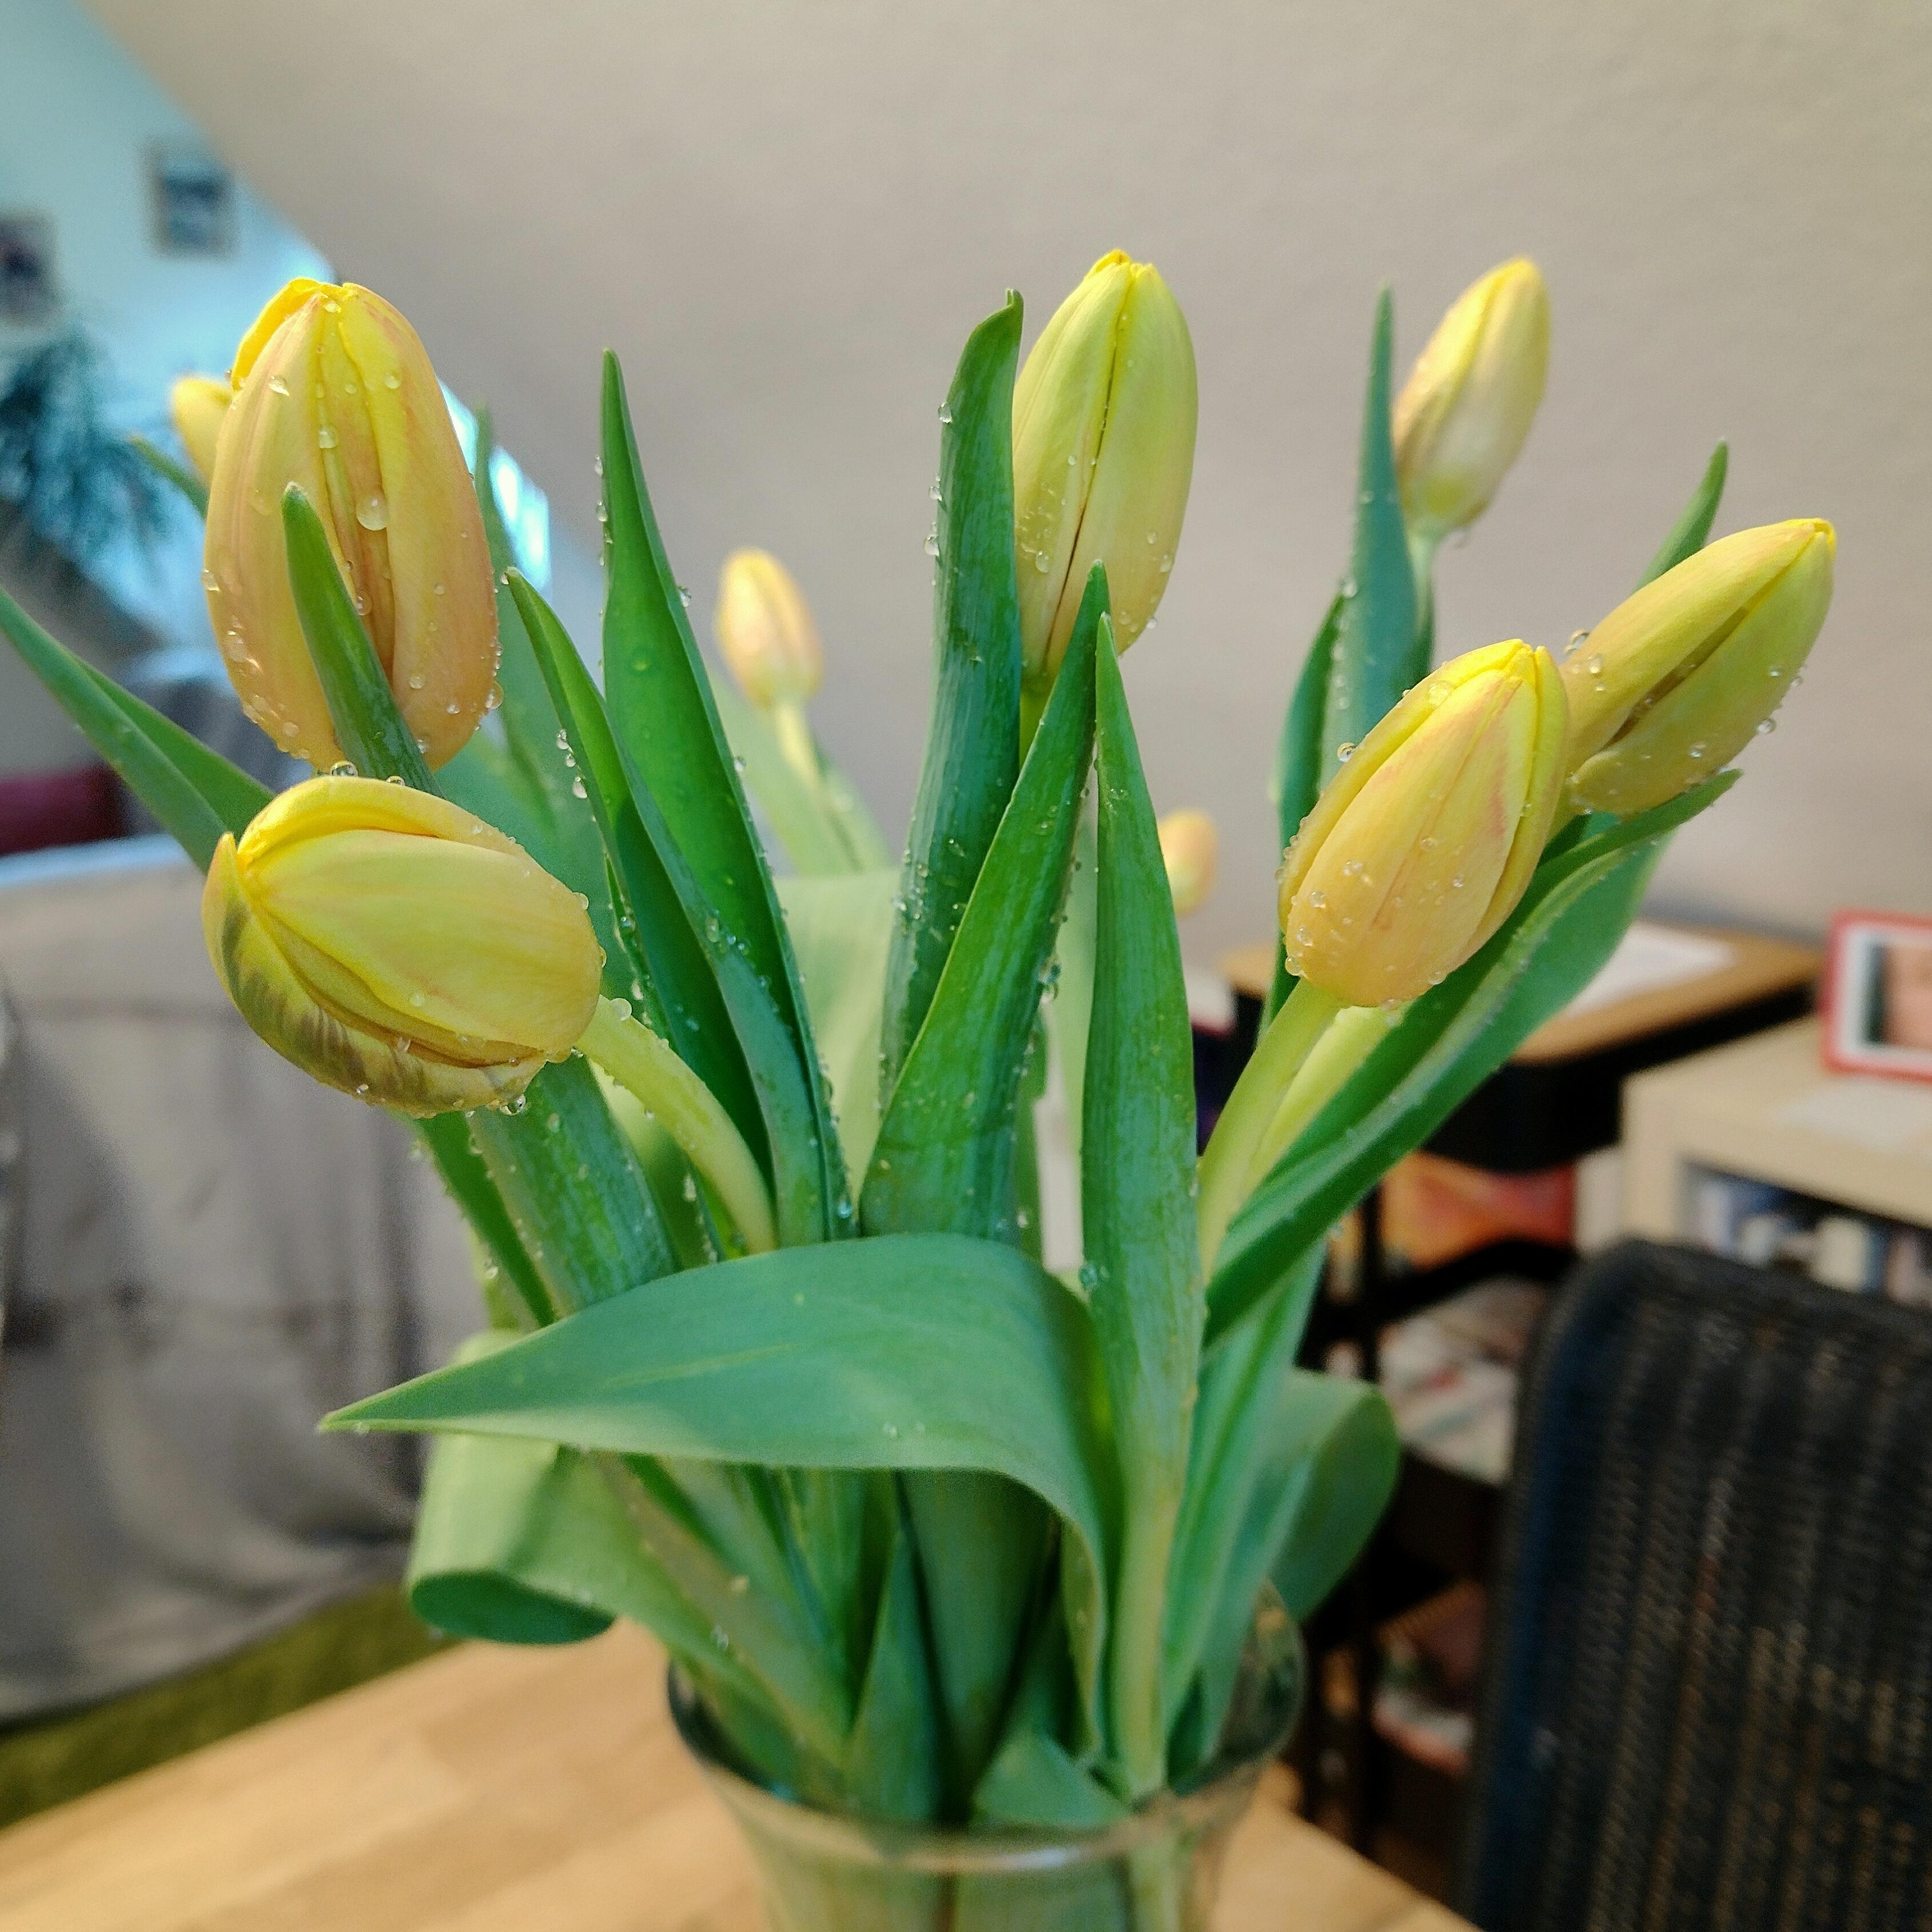 Verregnet
#tulpen #frischeblumen #tulpenliebe #gelb